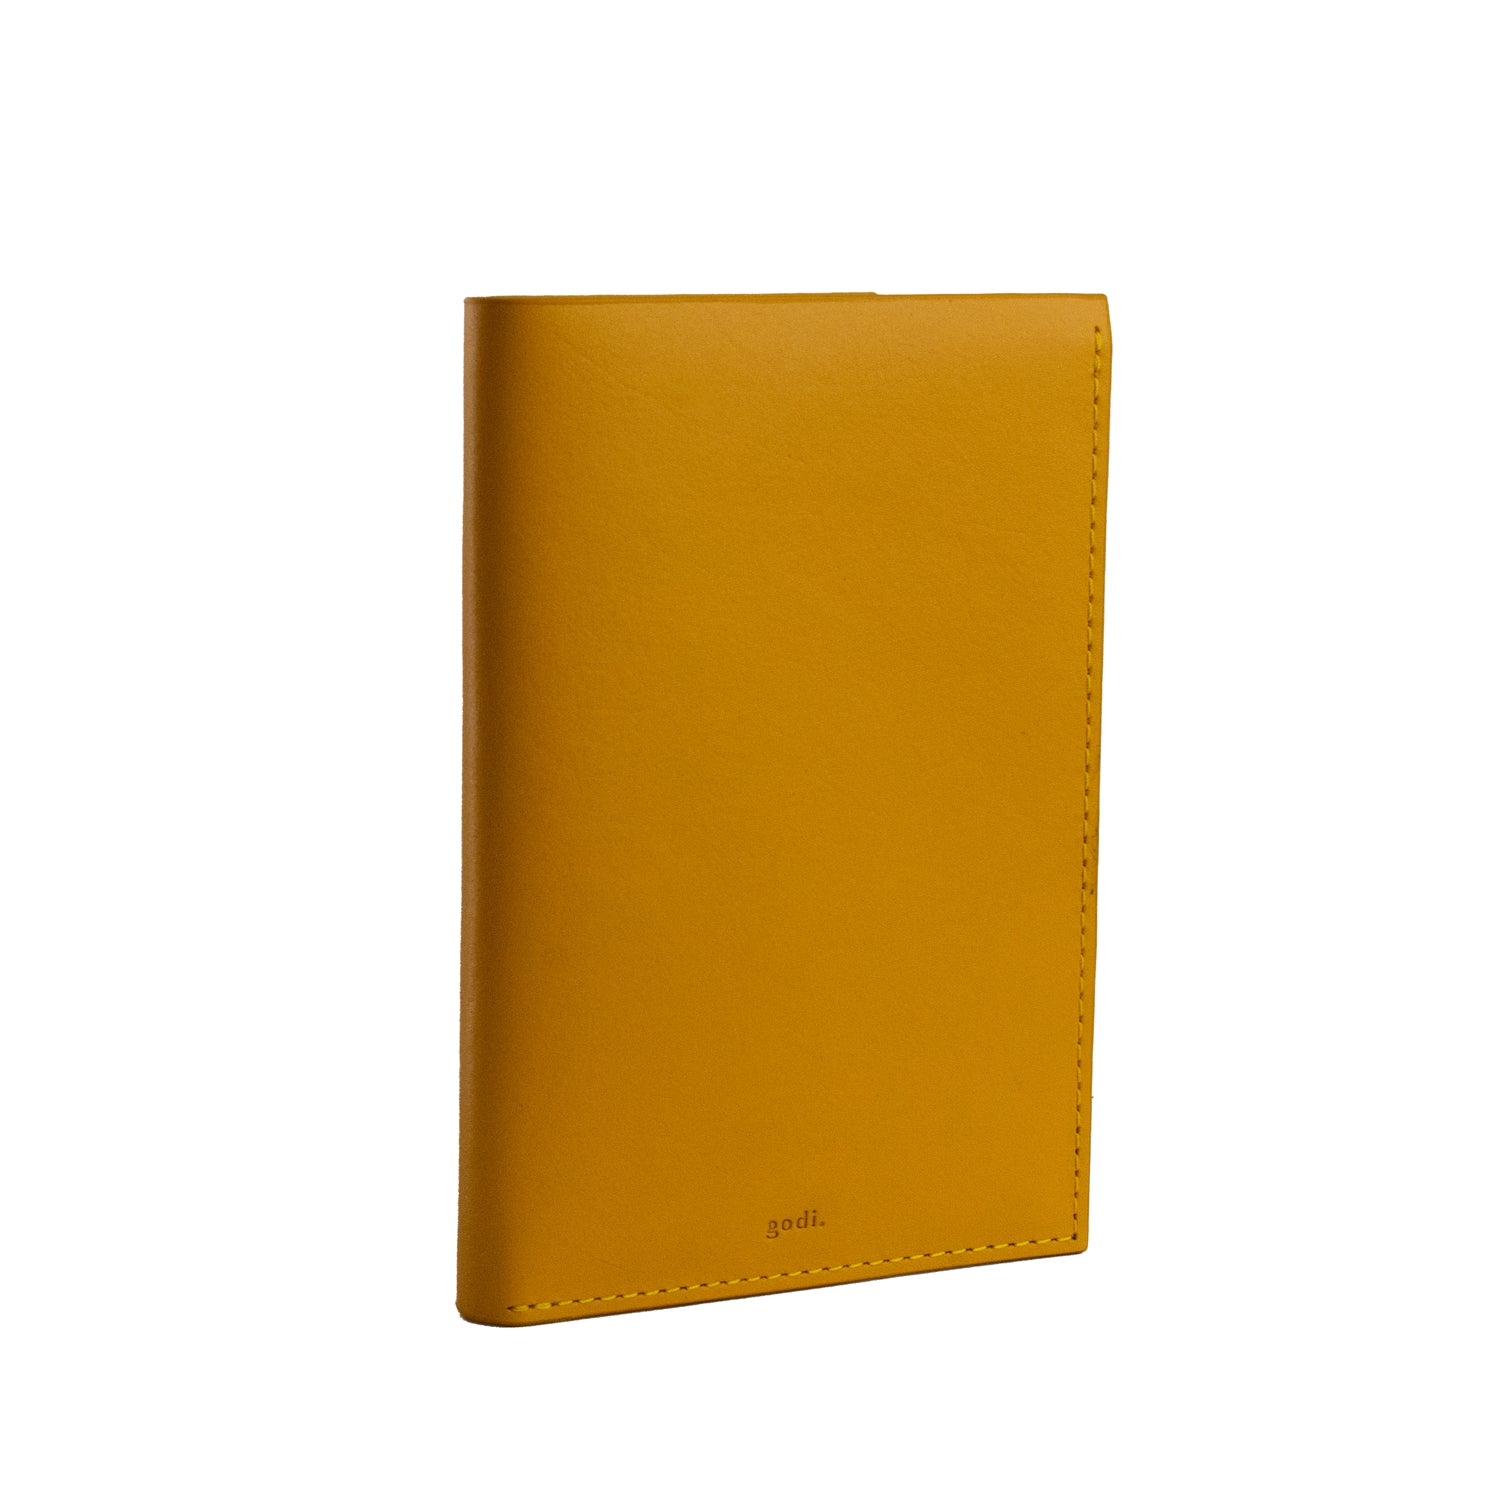 Passport Cover in Amber Yellow